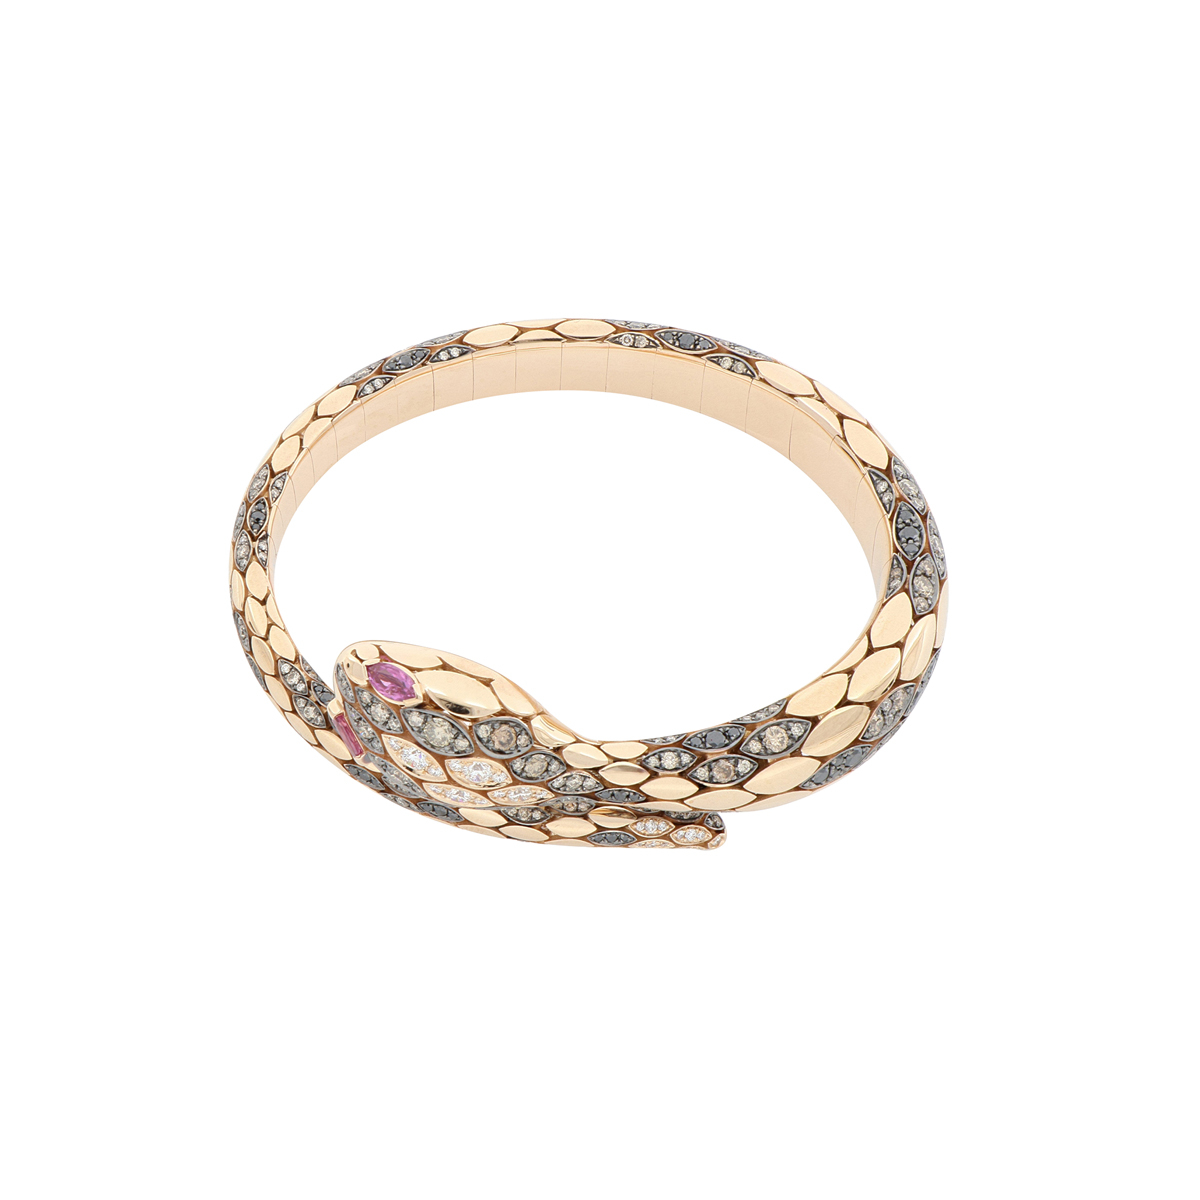 Rose Gold Snake Bracelet with Diamonds